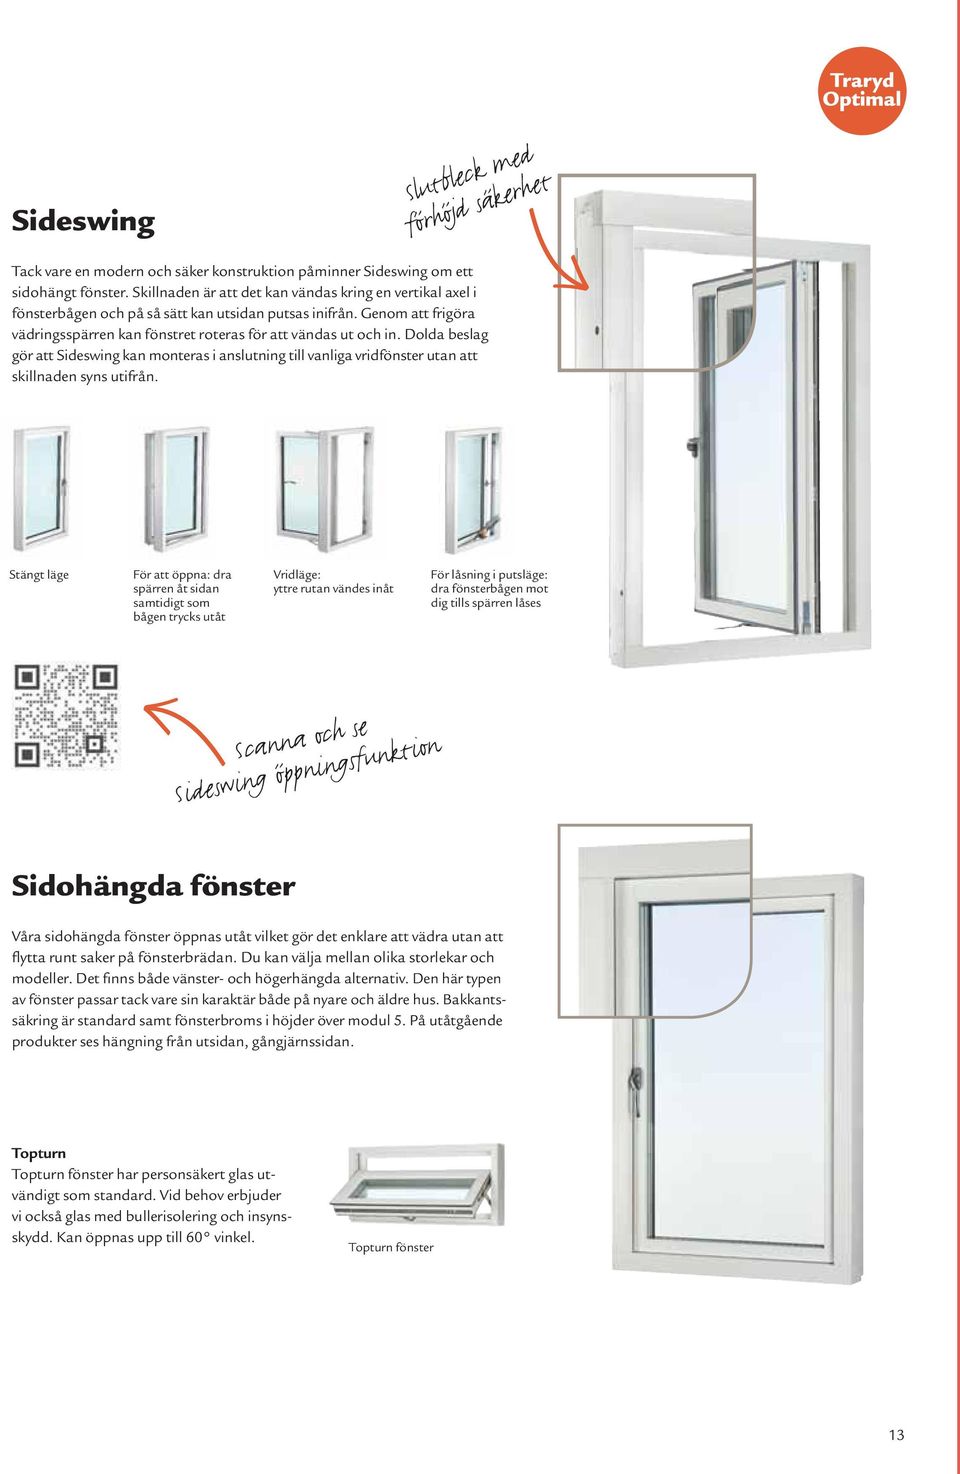 Dolda beslag gör att Sideswing kan monteras i anslutning till vanliga vridfönster utan att skillnaden syns utifrån.